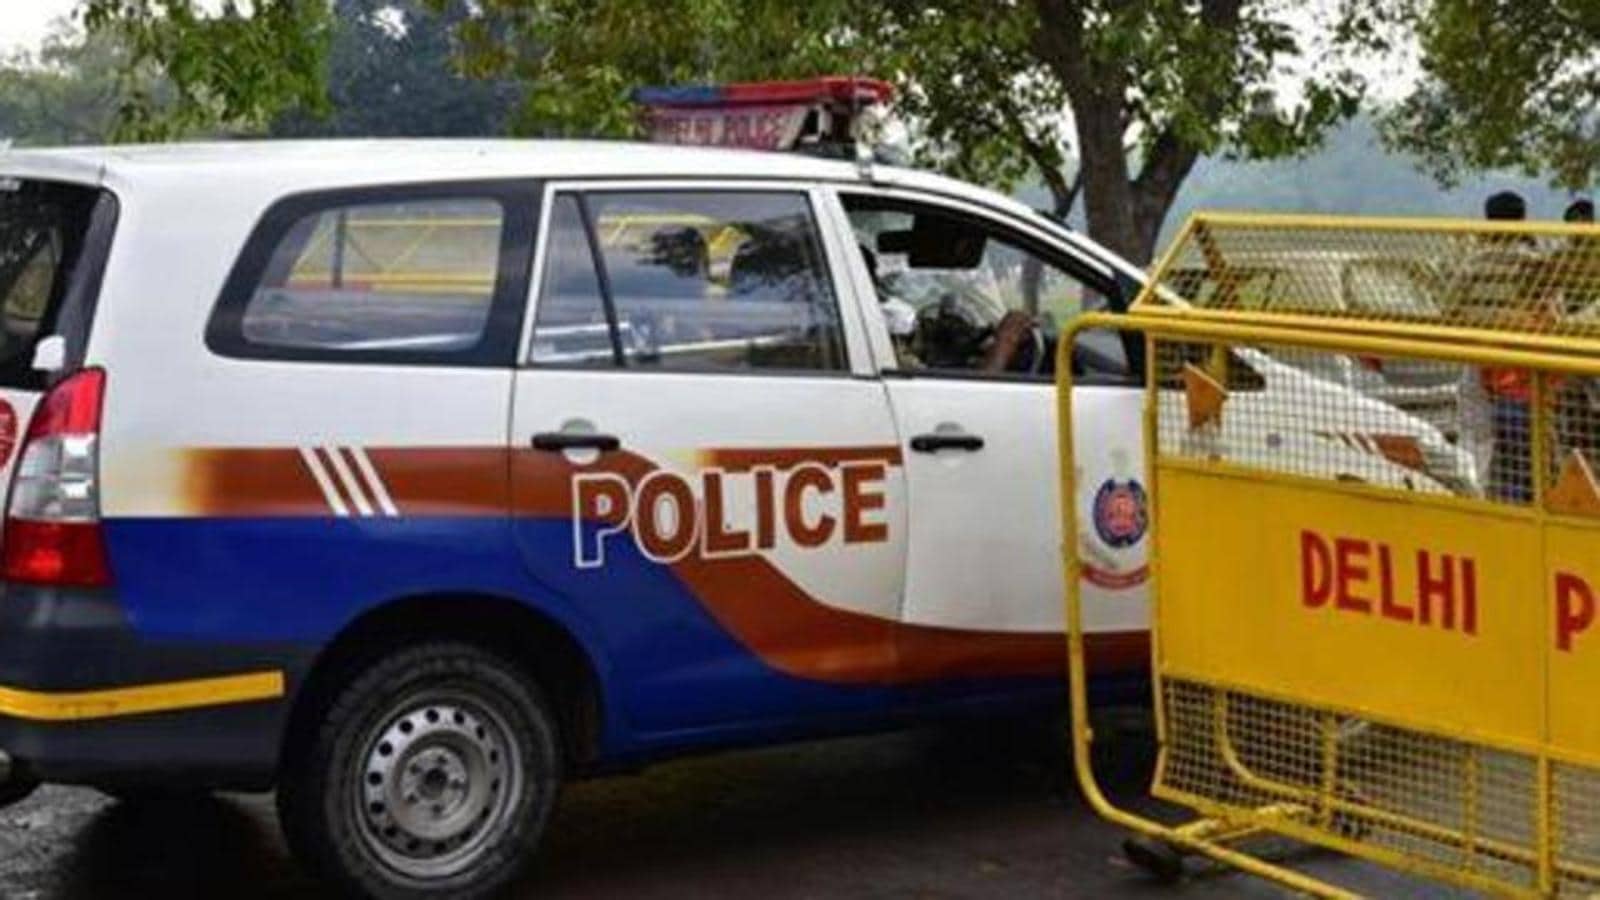 Man arrested for vandalism of police post in Delhi